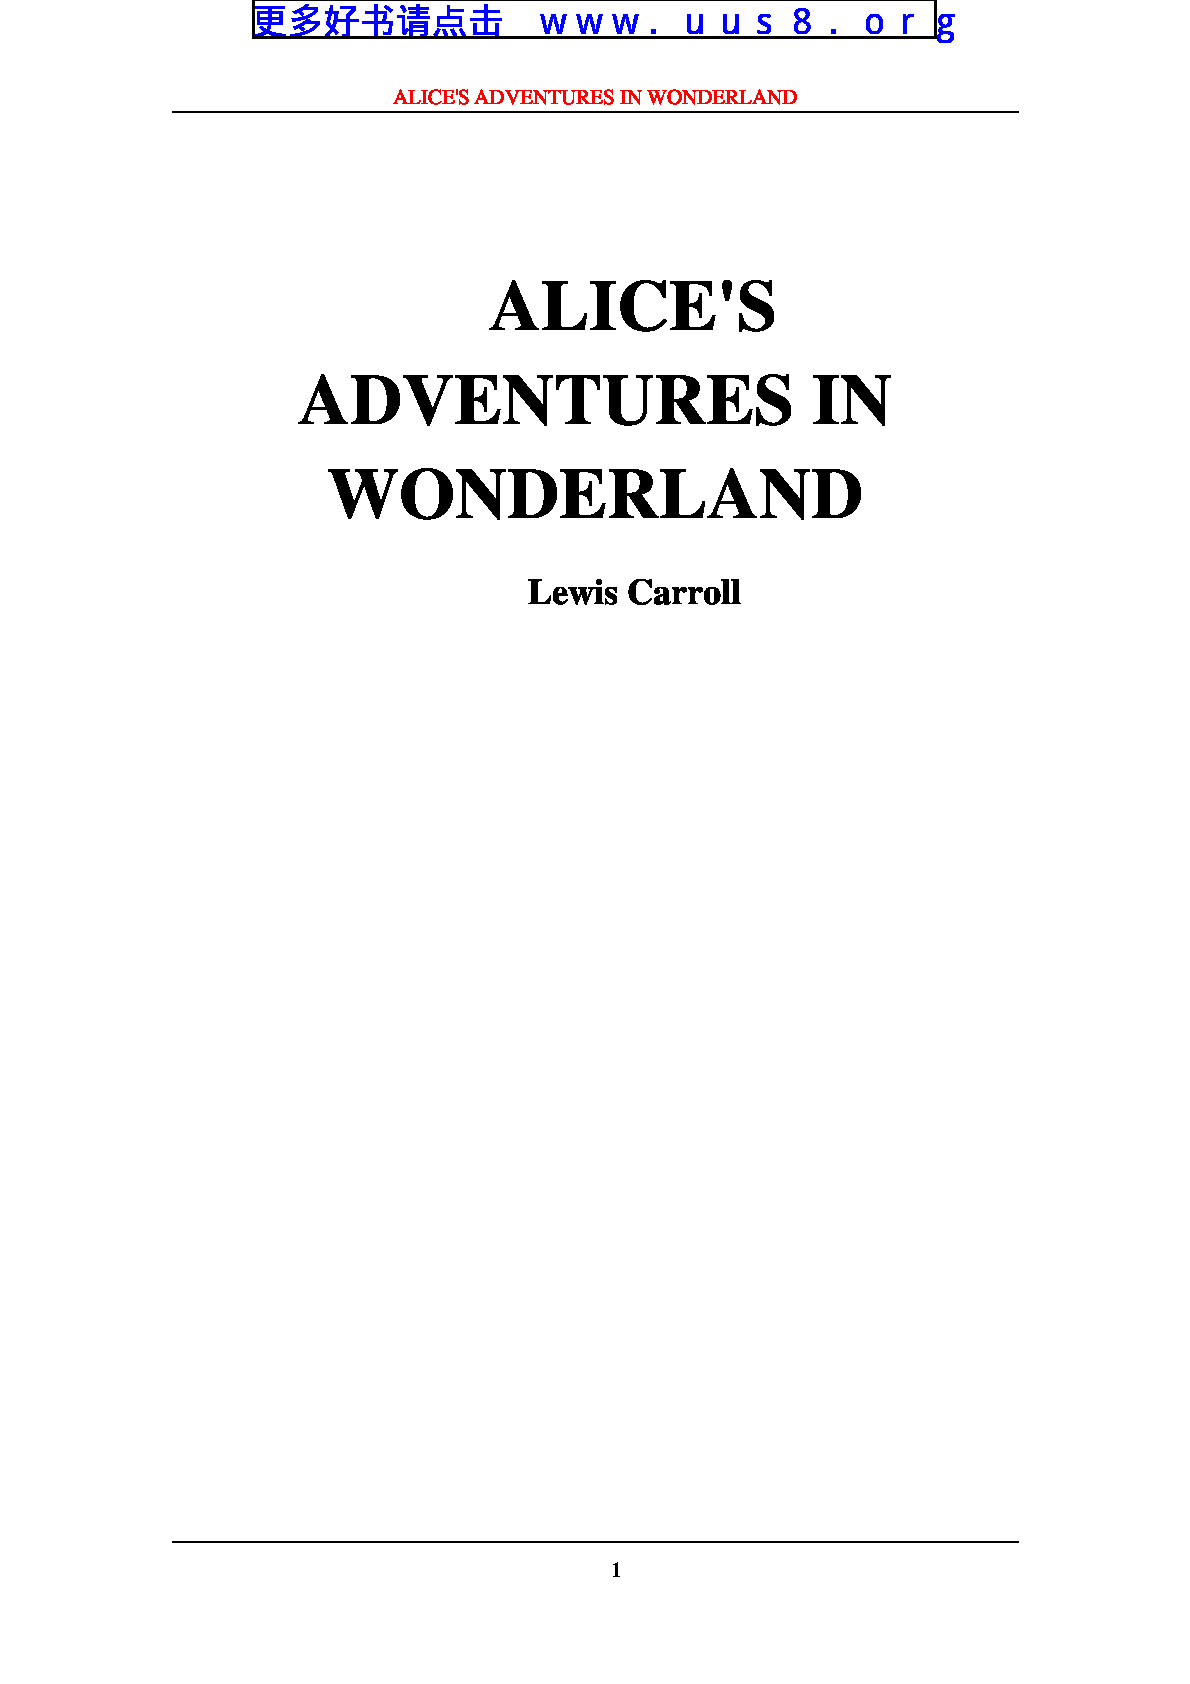 alice’s_adventures_in_wonderland(艾丽丝漫游奇境记)